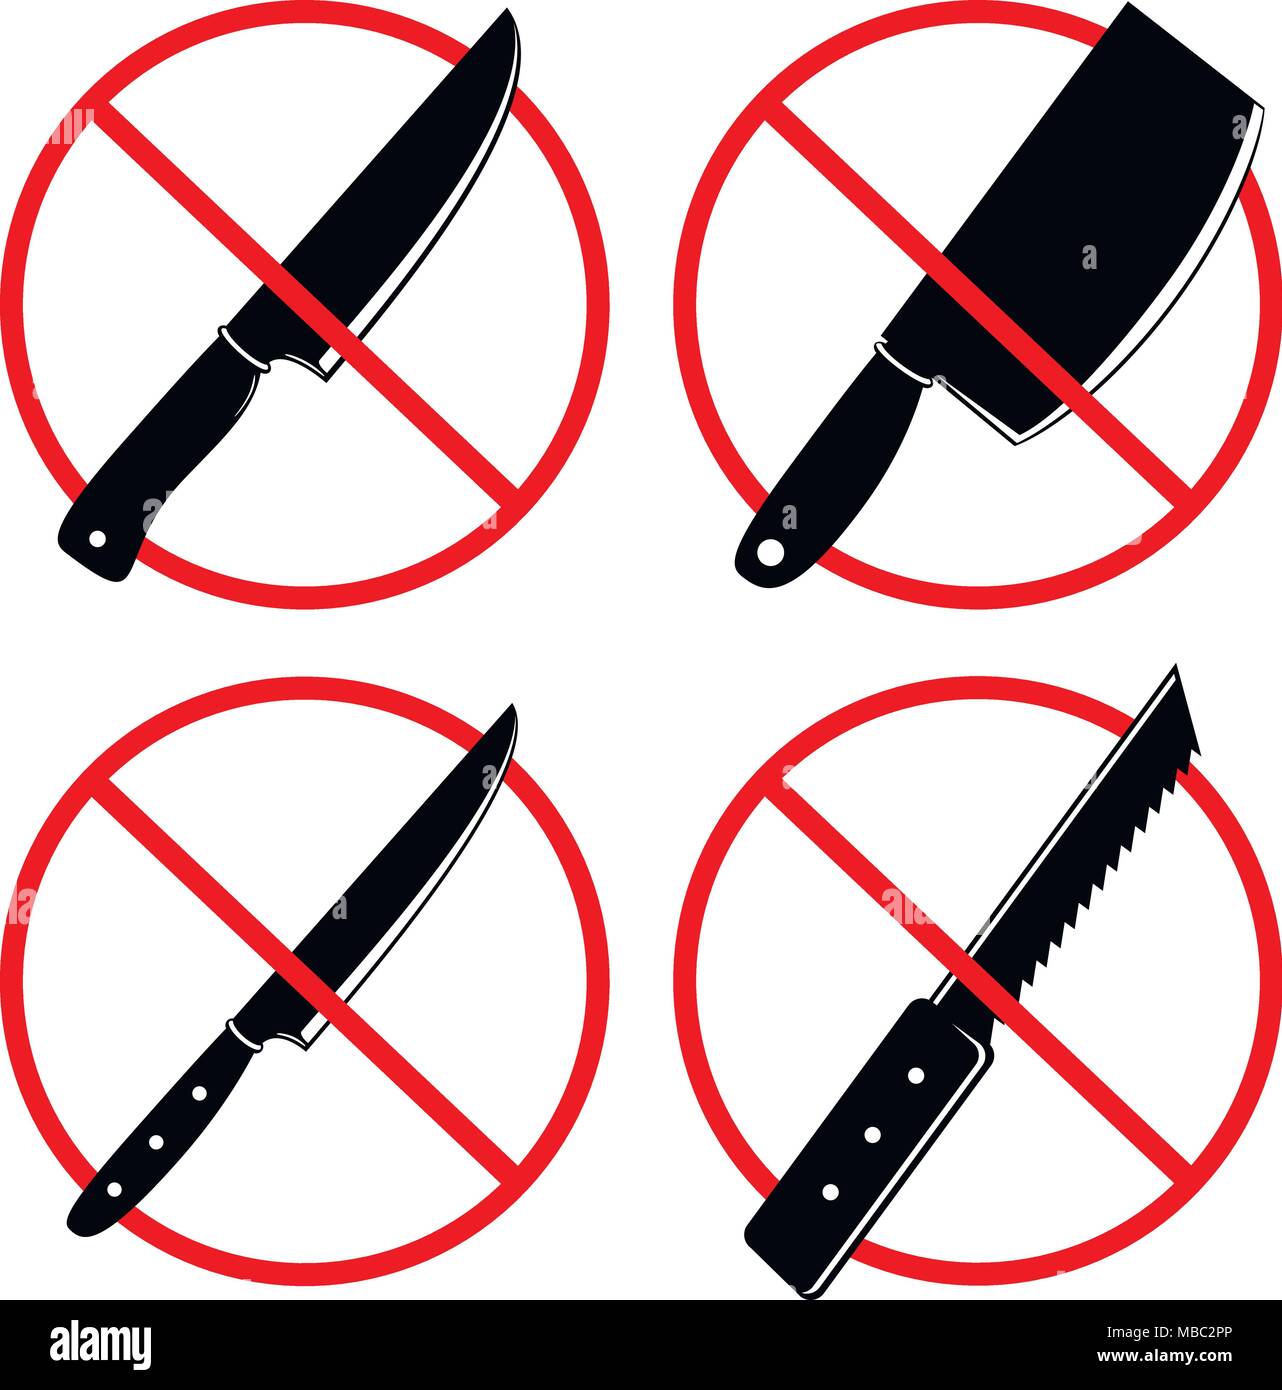 Keine Messer oder keine Waffe Zeichen. Keine Waffe erlaubt Symbole. Verboten  Symbol auf einem weißen Hintergrund. Vector Illustration Stock-Vektorgrafik  - Alamy